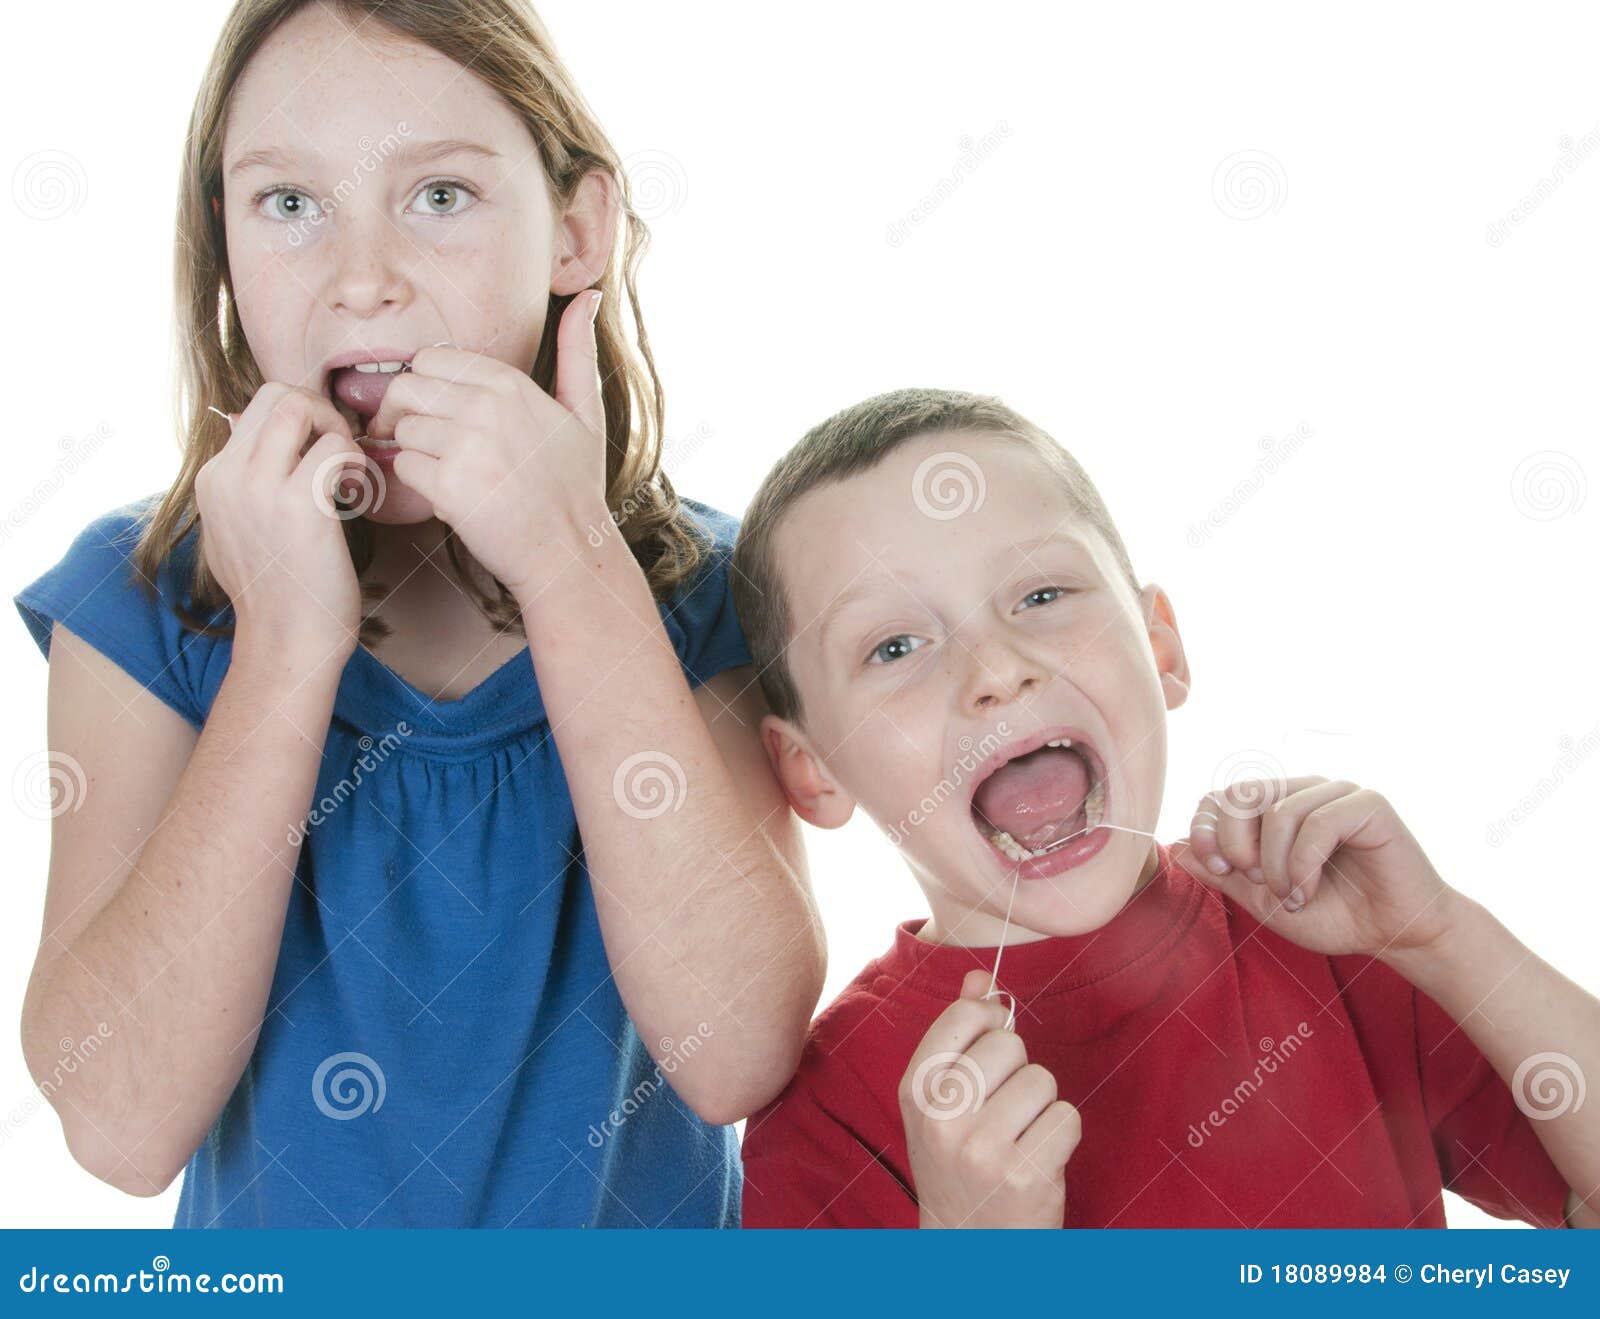 kids flossing teeth